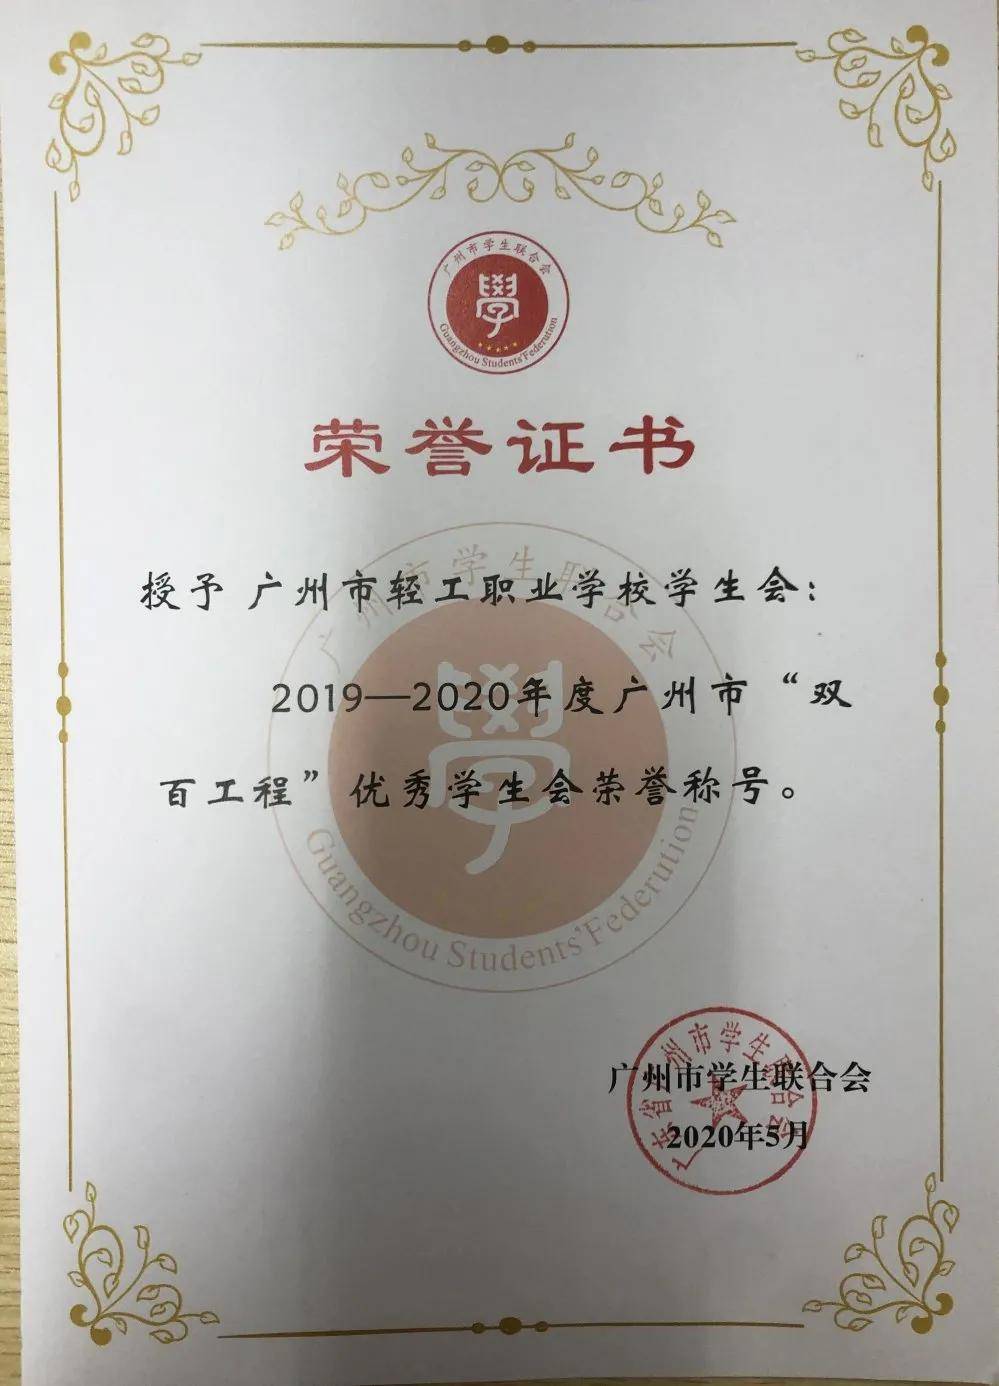 广州市轻工职校学生会荣获19-20年度广州市"双百工程"优秀学生会荣誉